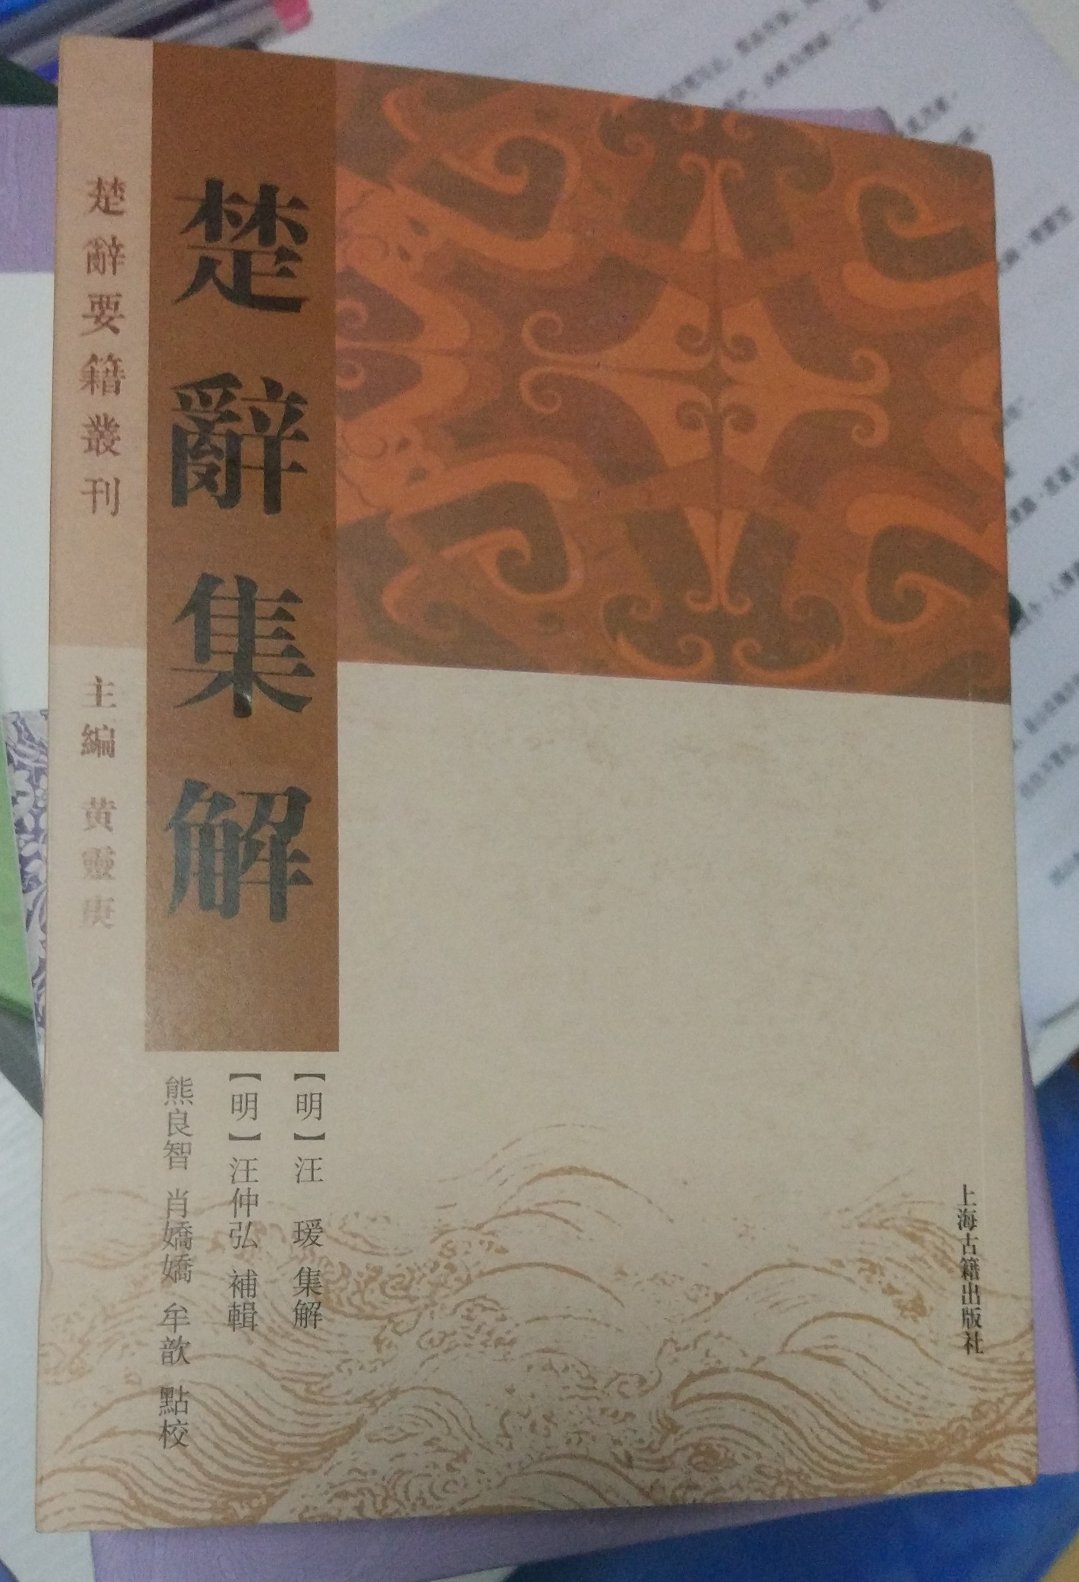 诗经、楚辞是中华文化的瑰宝，如果对中国古代文化有兴趣的人，应当择一善本，好好读读，欣赏一下。这个本子不错，值得推荐购买阅读收藏。